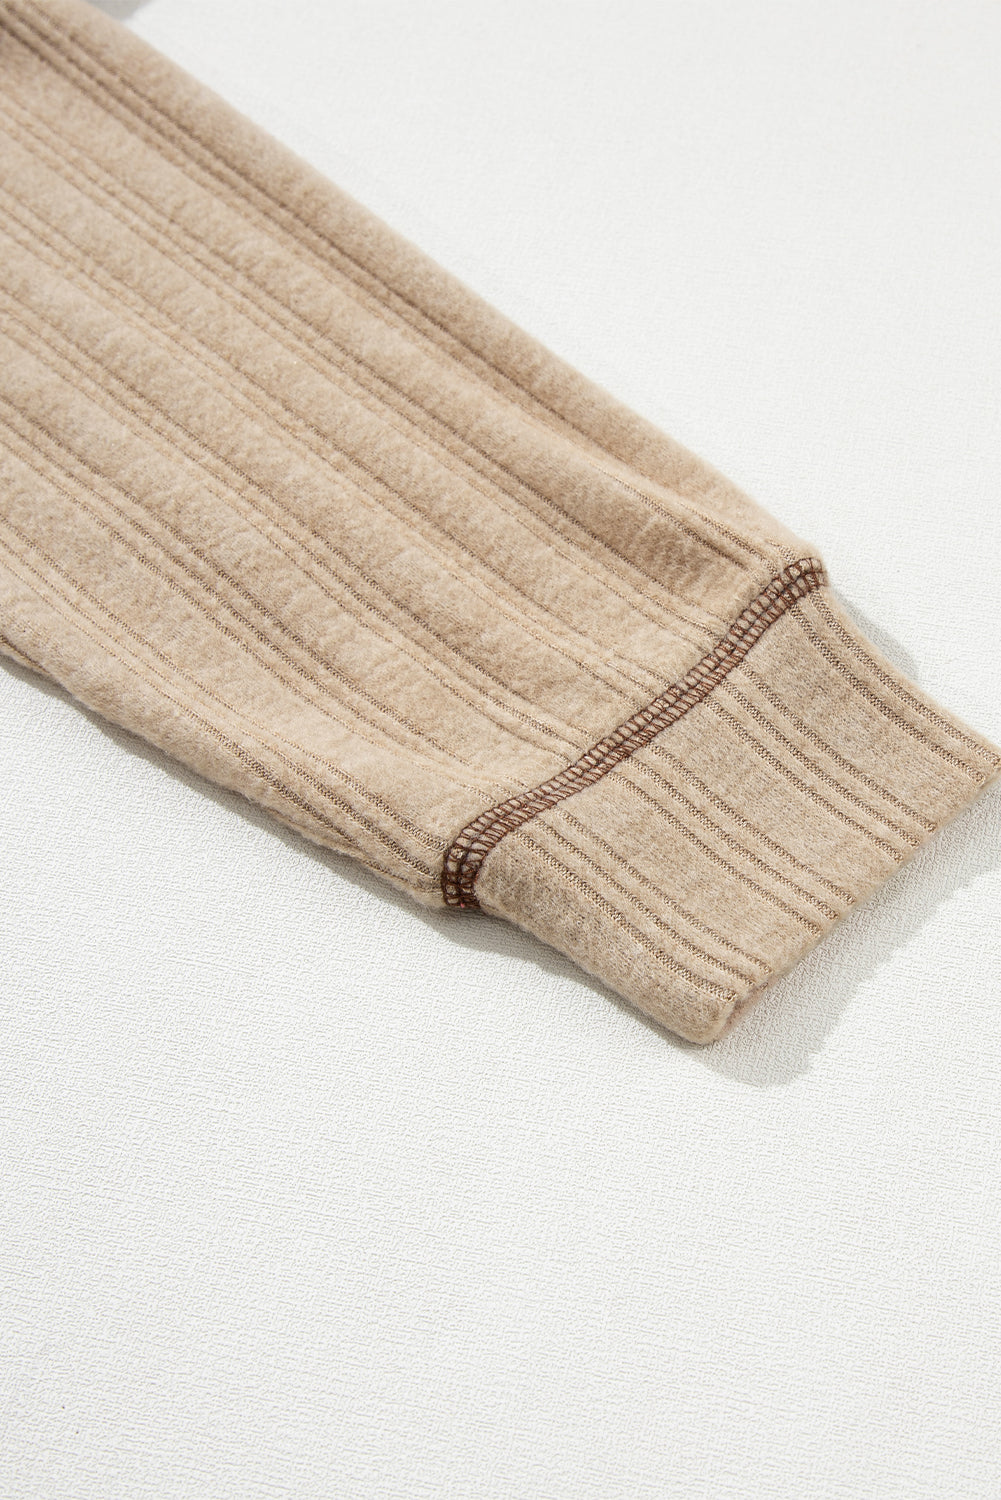 Top in maglia strutturata con cuciture a vista larghe color kaki chiaro